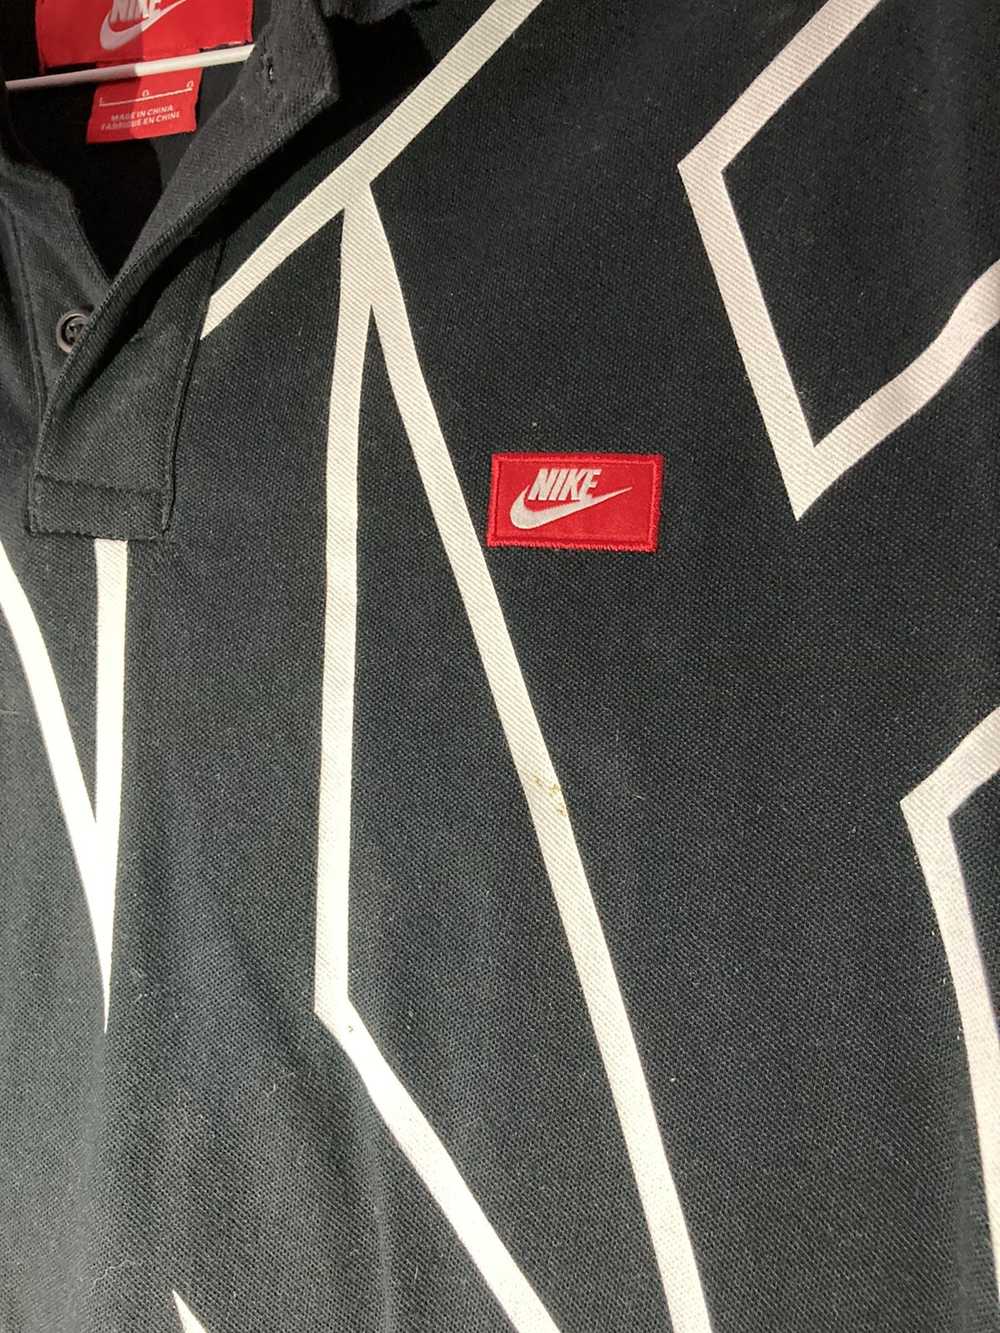 Nike Nike Men’s Big Logo Golf Shirt - image 3